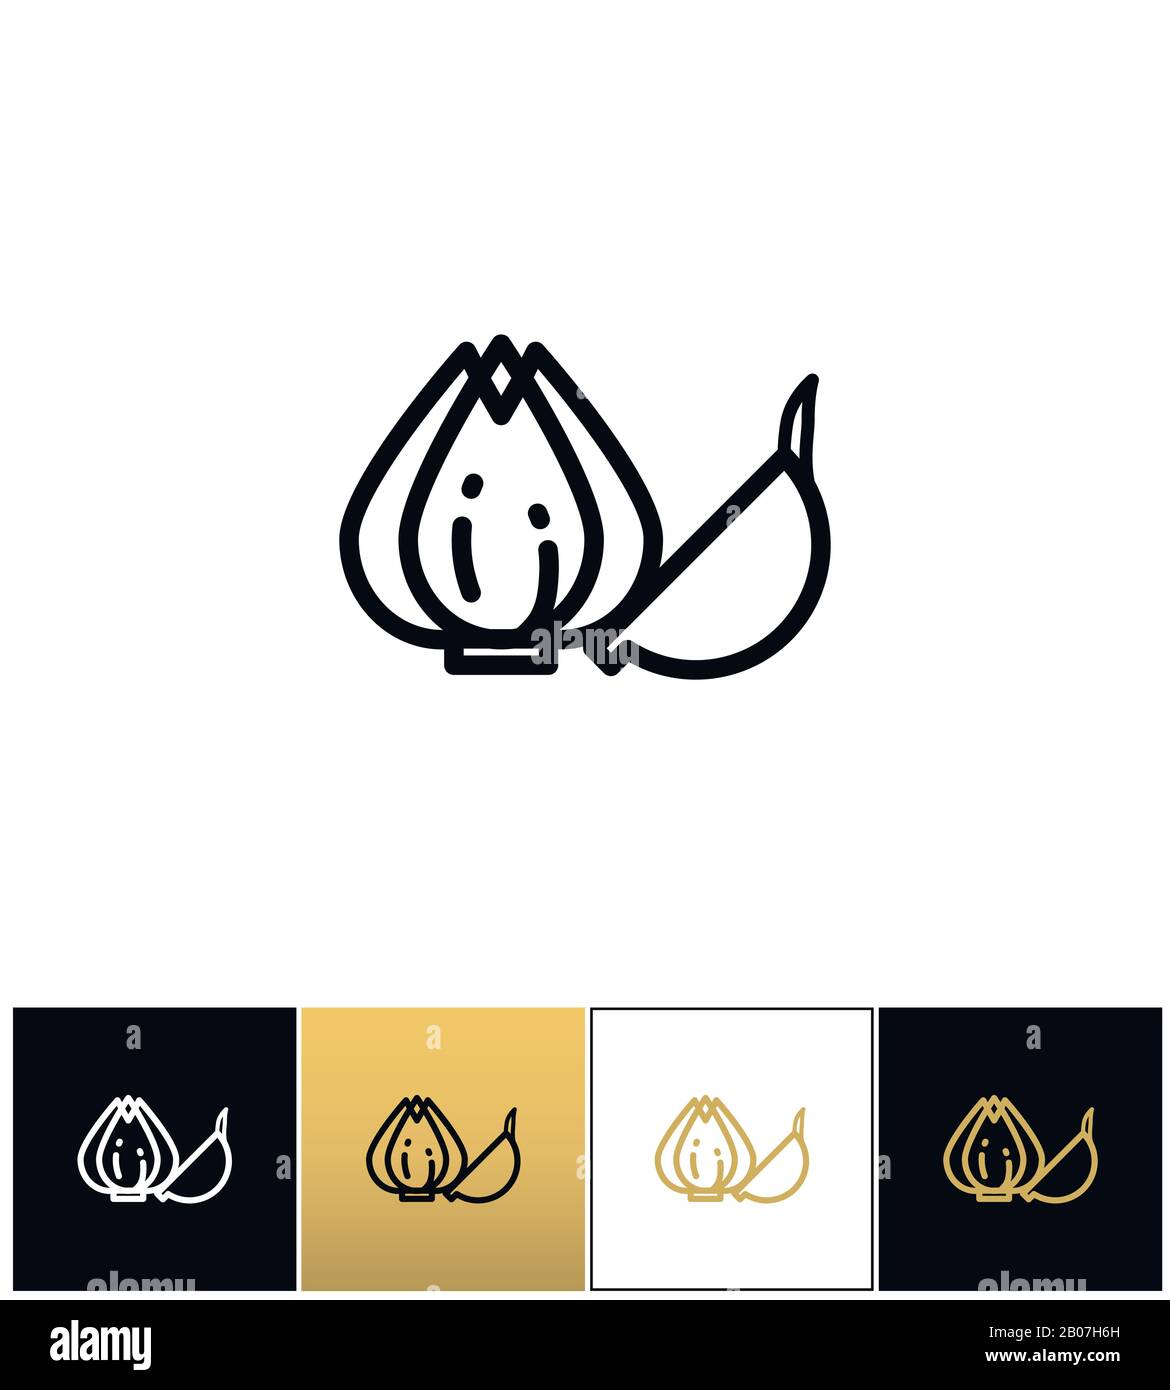 Symbol für Knoblauchzwiebel oder allium Pflanzenvektor. Knoblauchzwiebel oder allium Pflanzenpiktogramm auf schwarzem, weißem und goldenem Hintergrund Stock Vektor